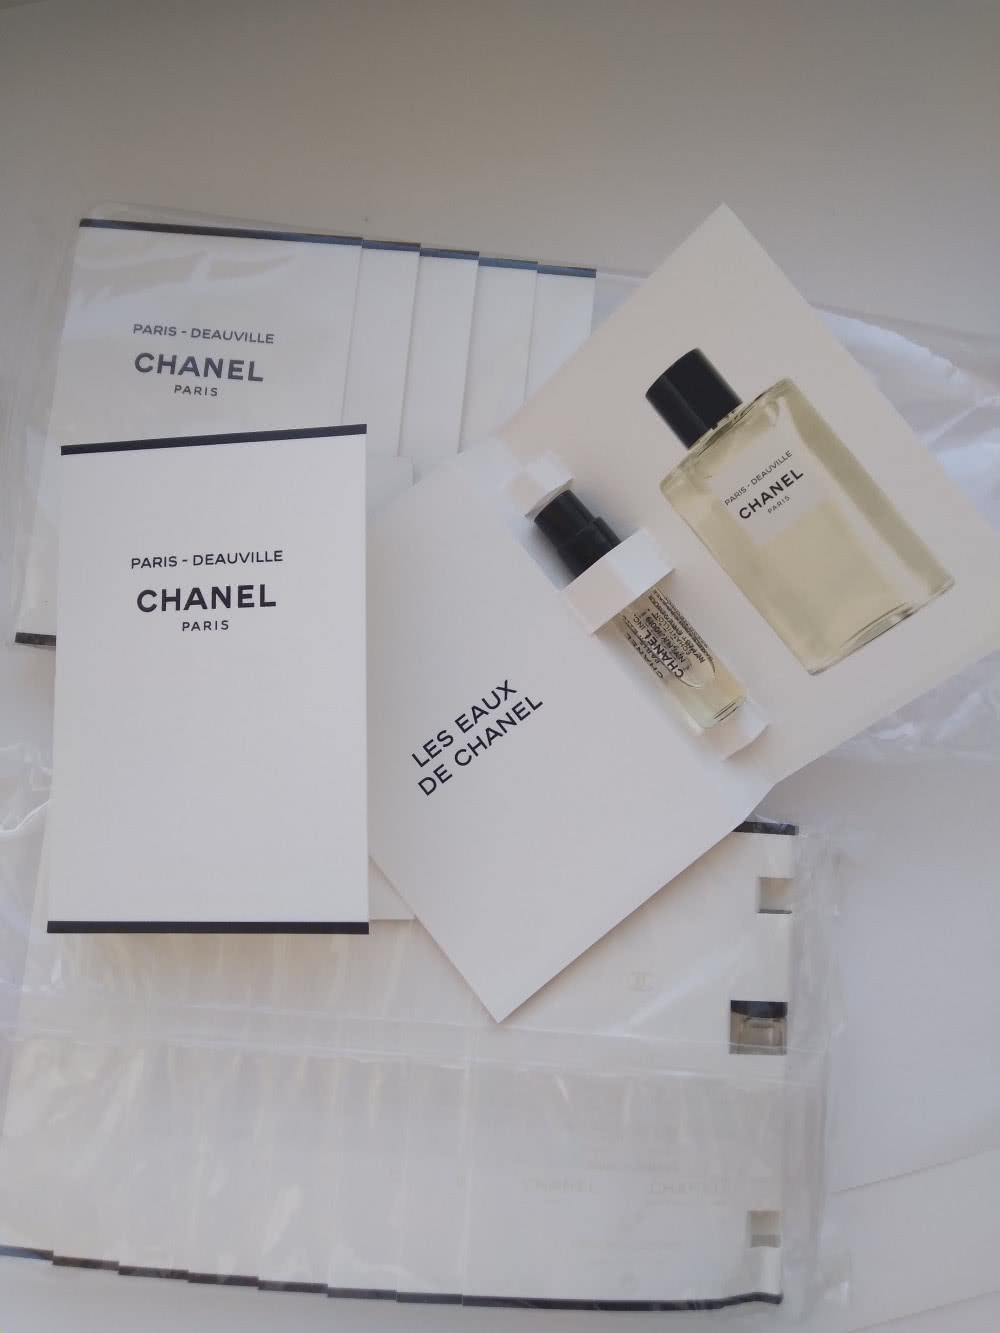 Chanel paris - deauville 1.5 ml сэмпл